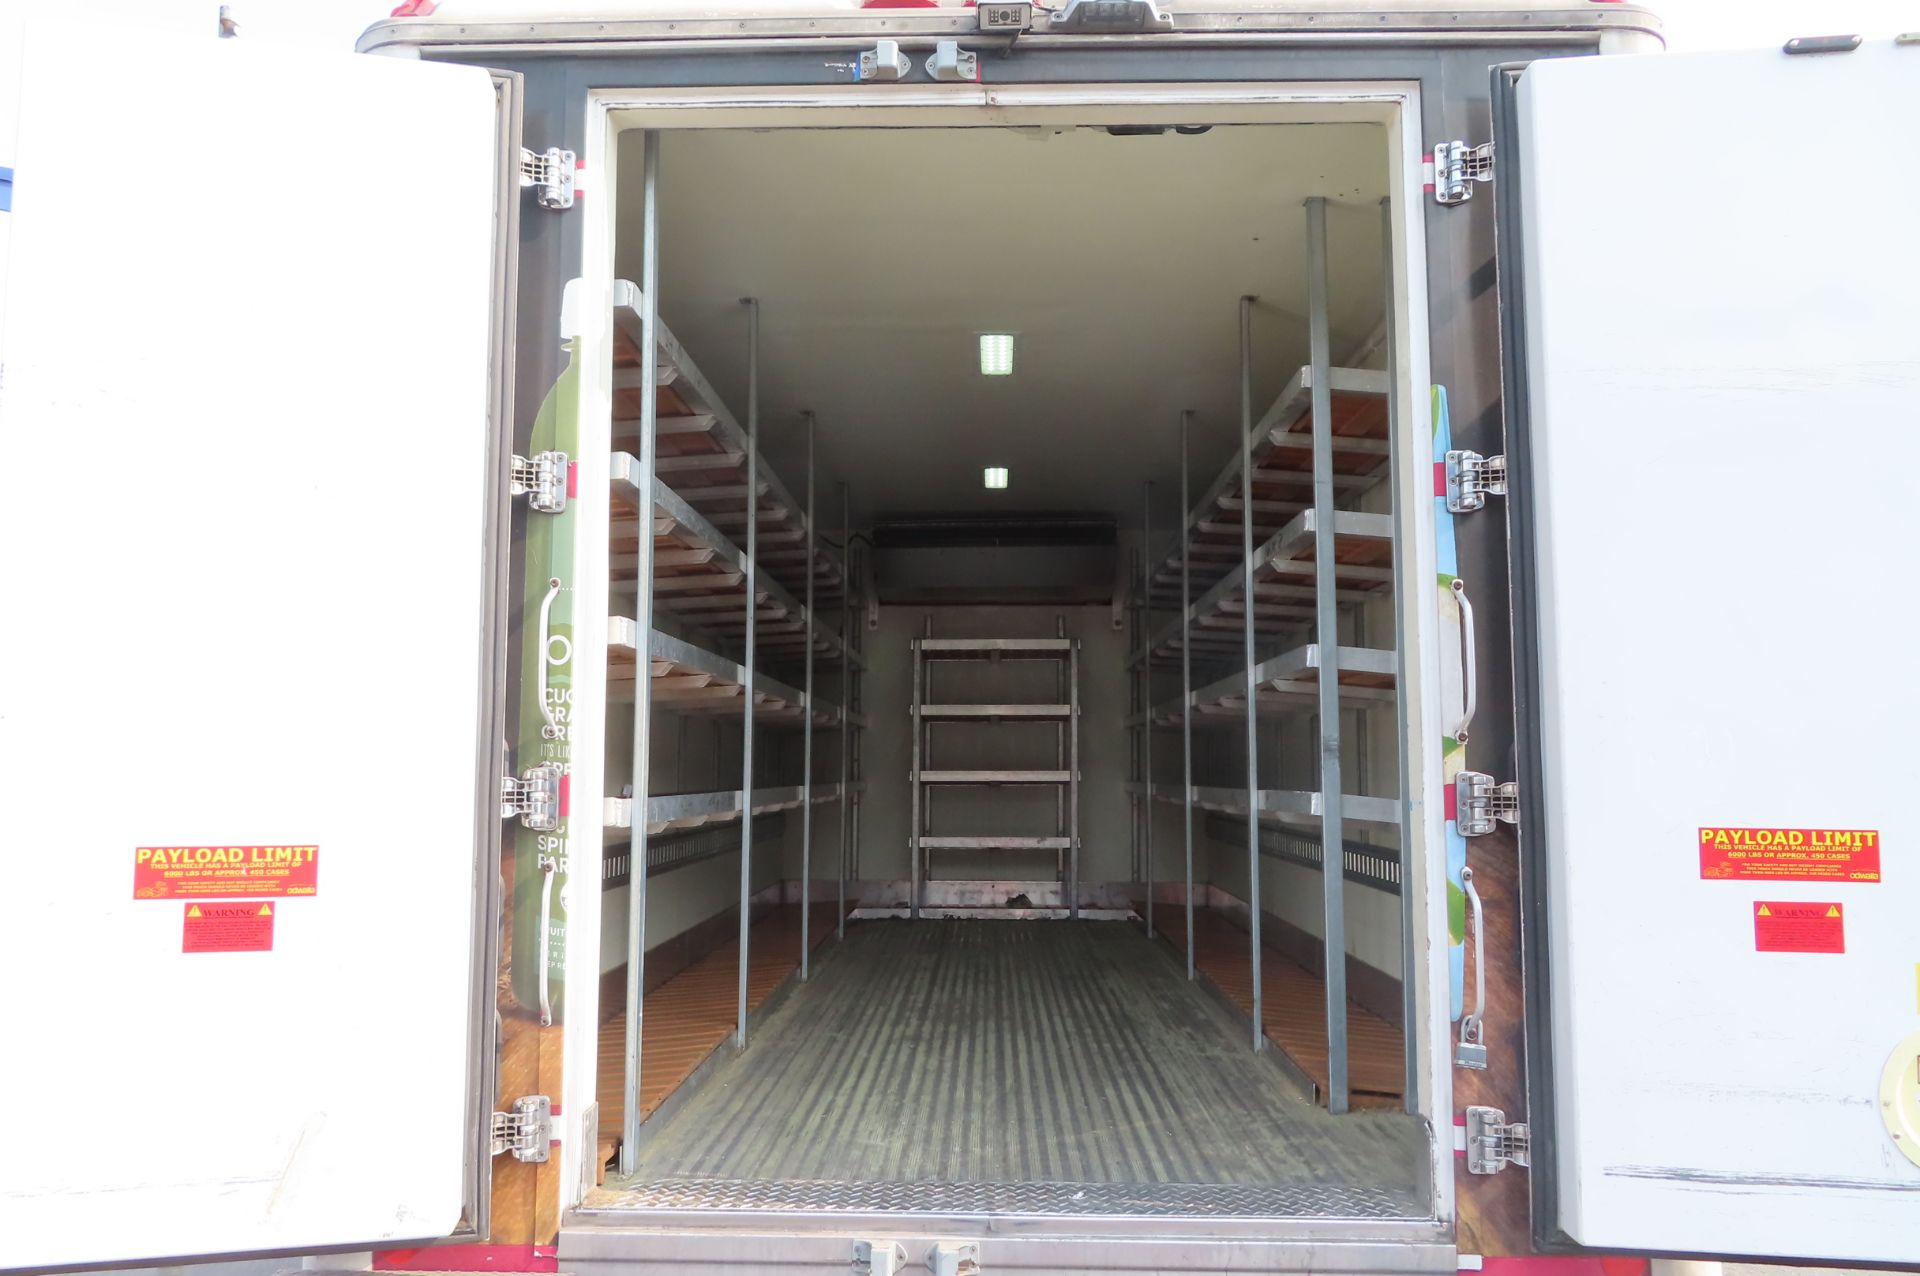 2013 Isuzu refrigerated truck - Image 5 of 10